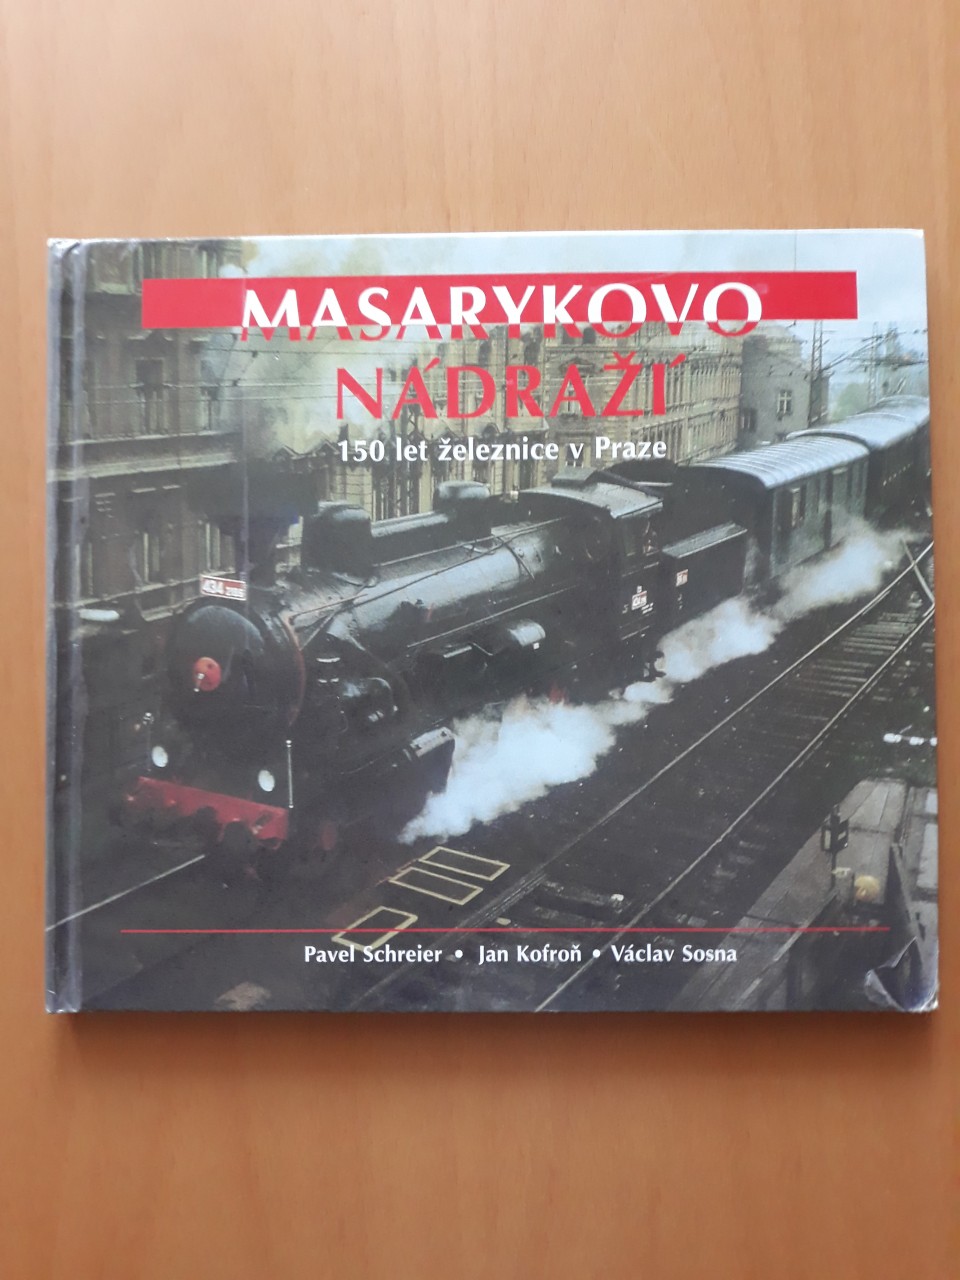 Masarykovo ndra 150 let eleznce v v Praze - Pavel Schreier, Jan Kofro, Vclav Sosna 1995